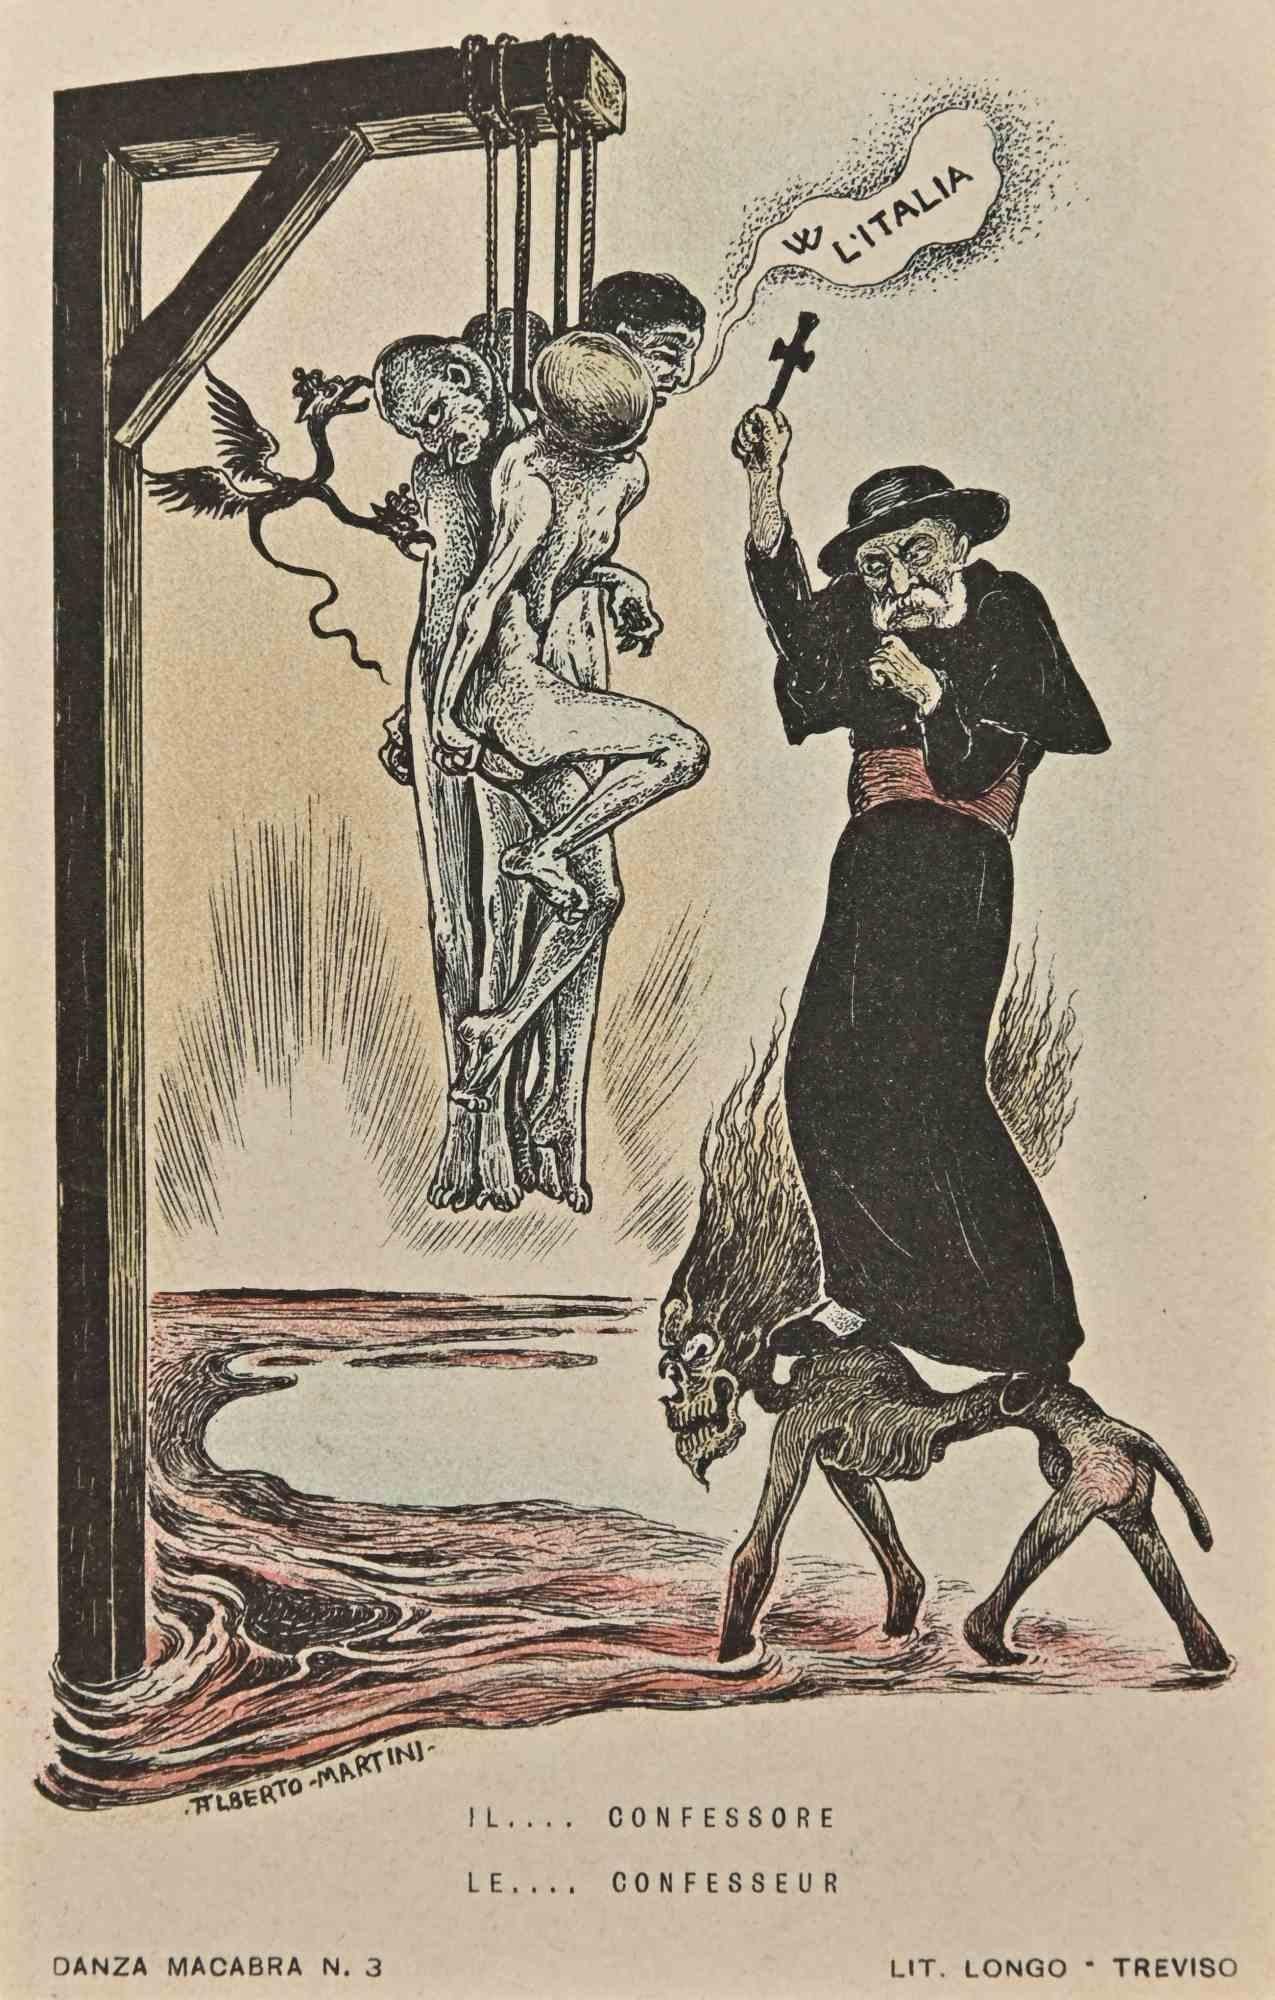 Alberto Martini Figurative Print - The European Macabre Dance N.3  - Lithograph by A. Martini - 1915